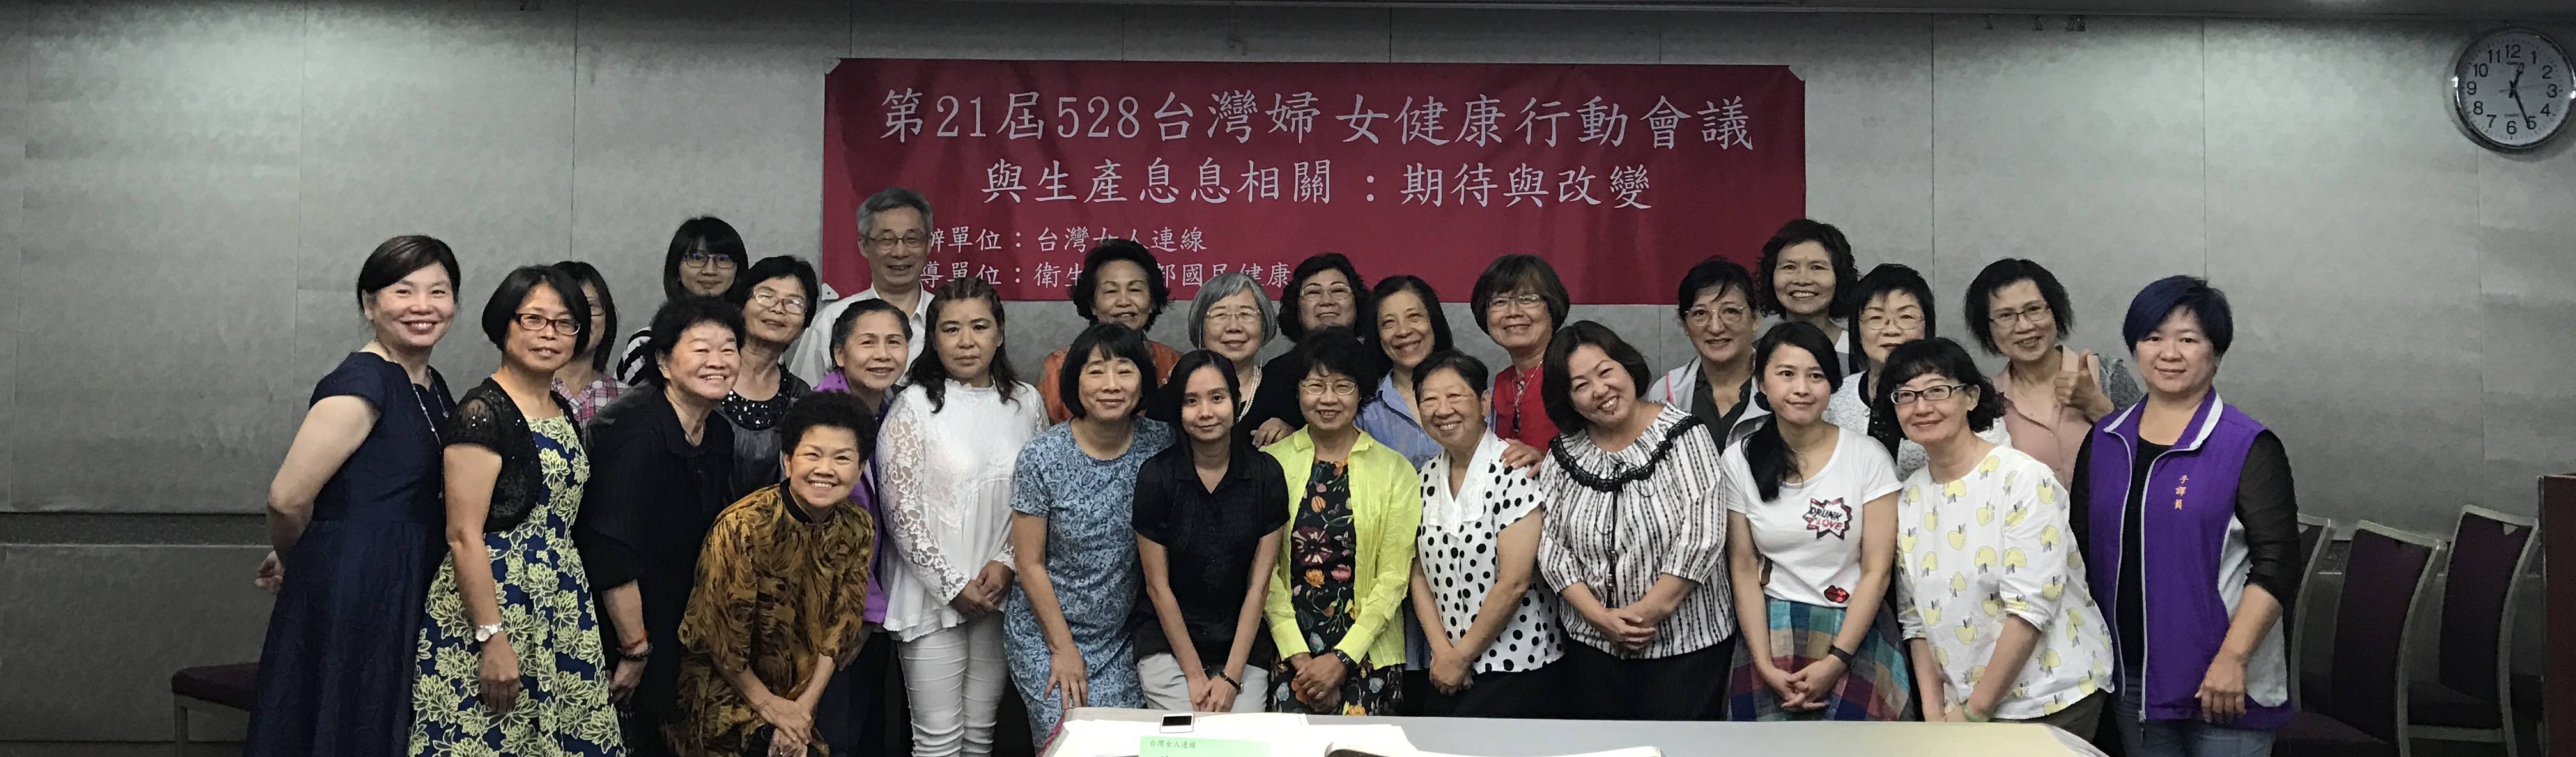 第21屆528台灣婦女健康行動會議　與生產息息相關：期待與改變